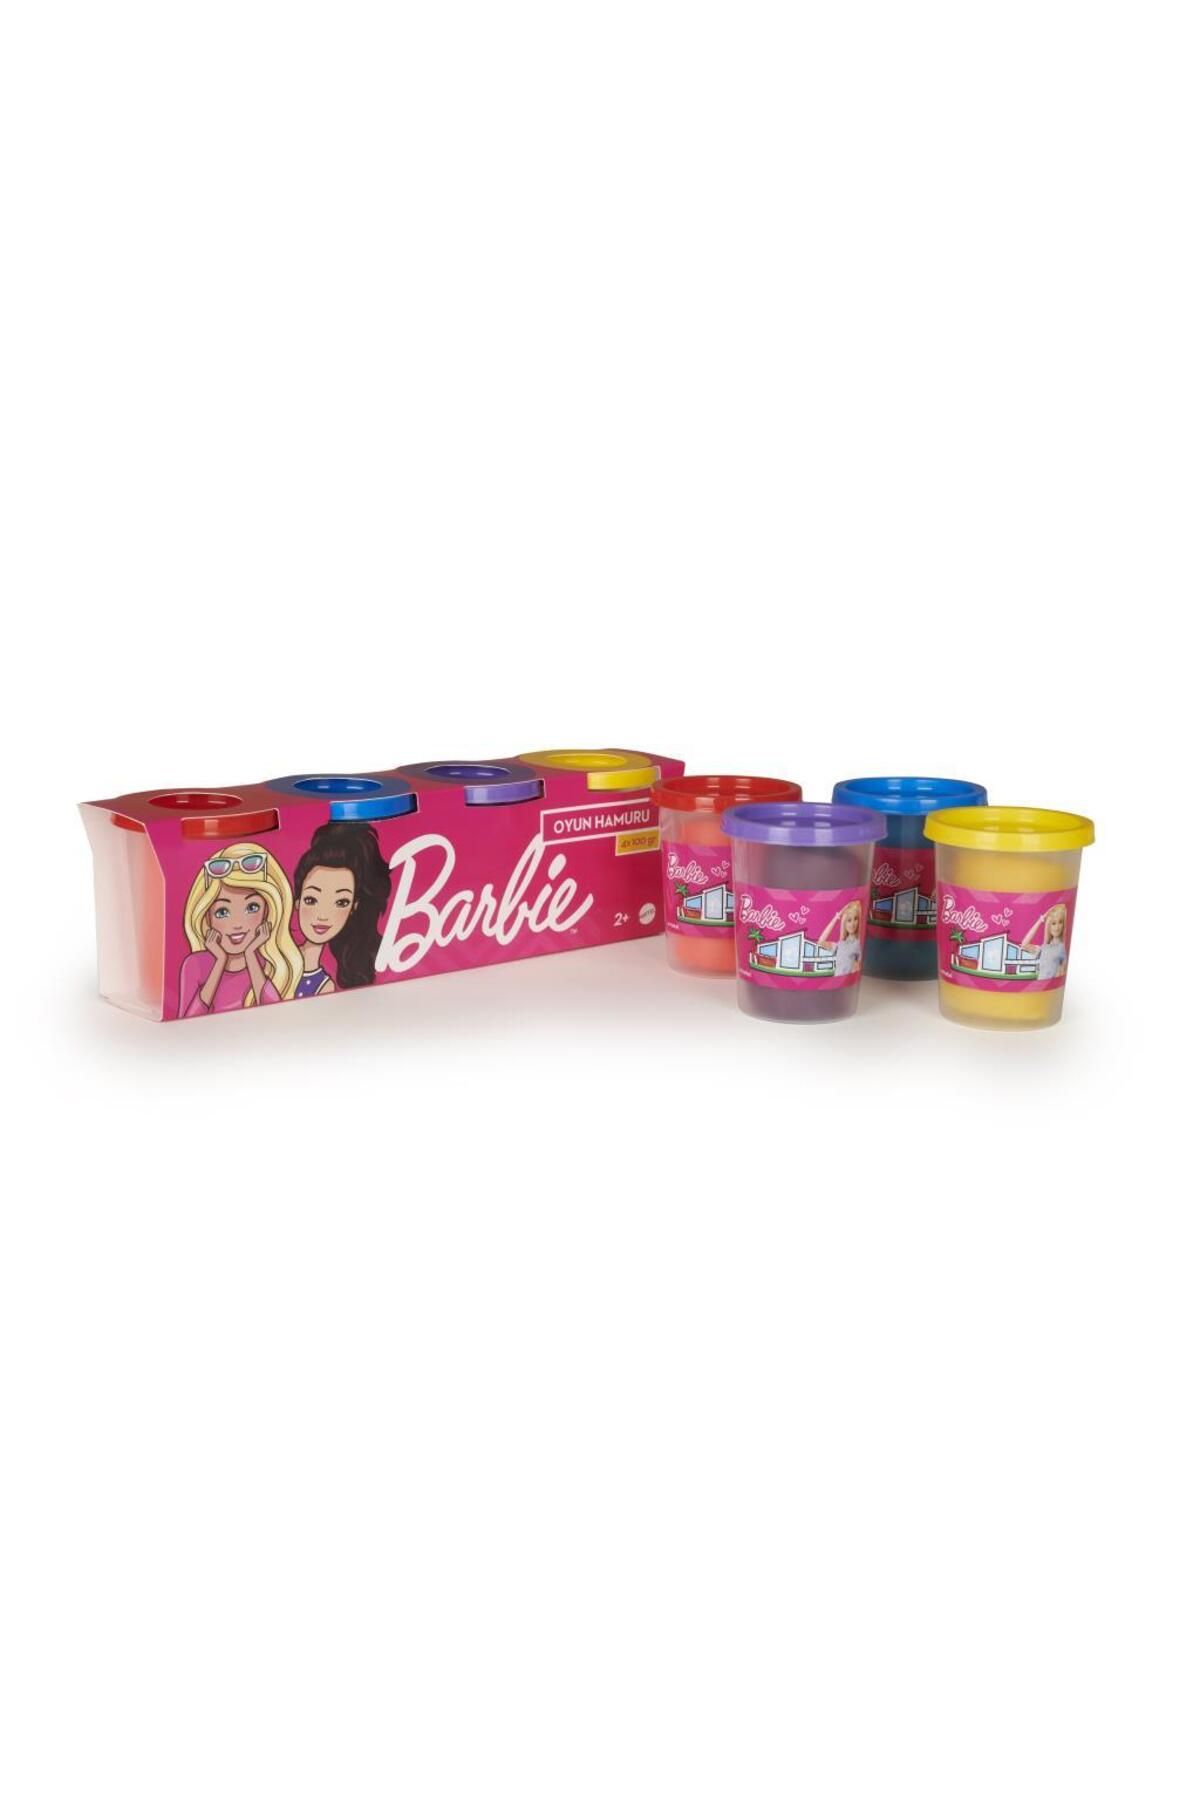 Barbie Oyun Hamuru 4'lü Paket - (4 X 100 GR) Gpn18